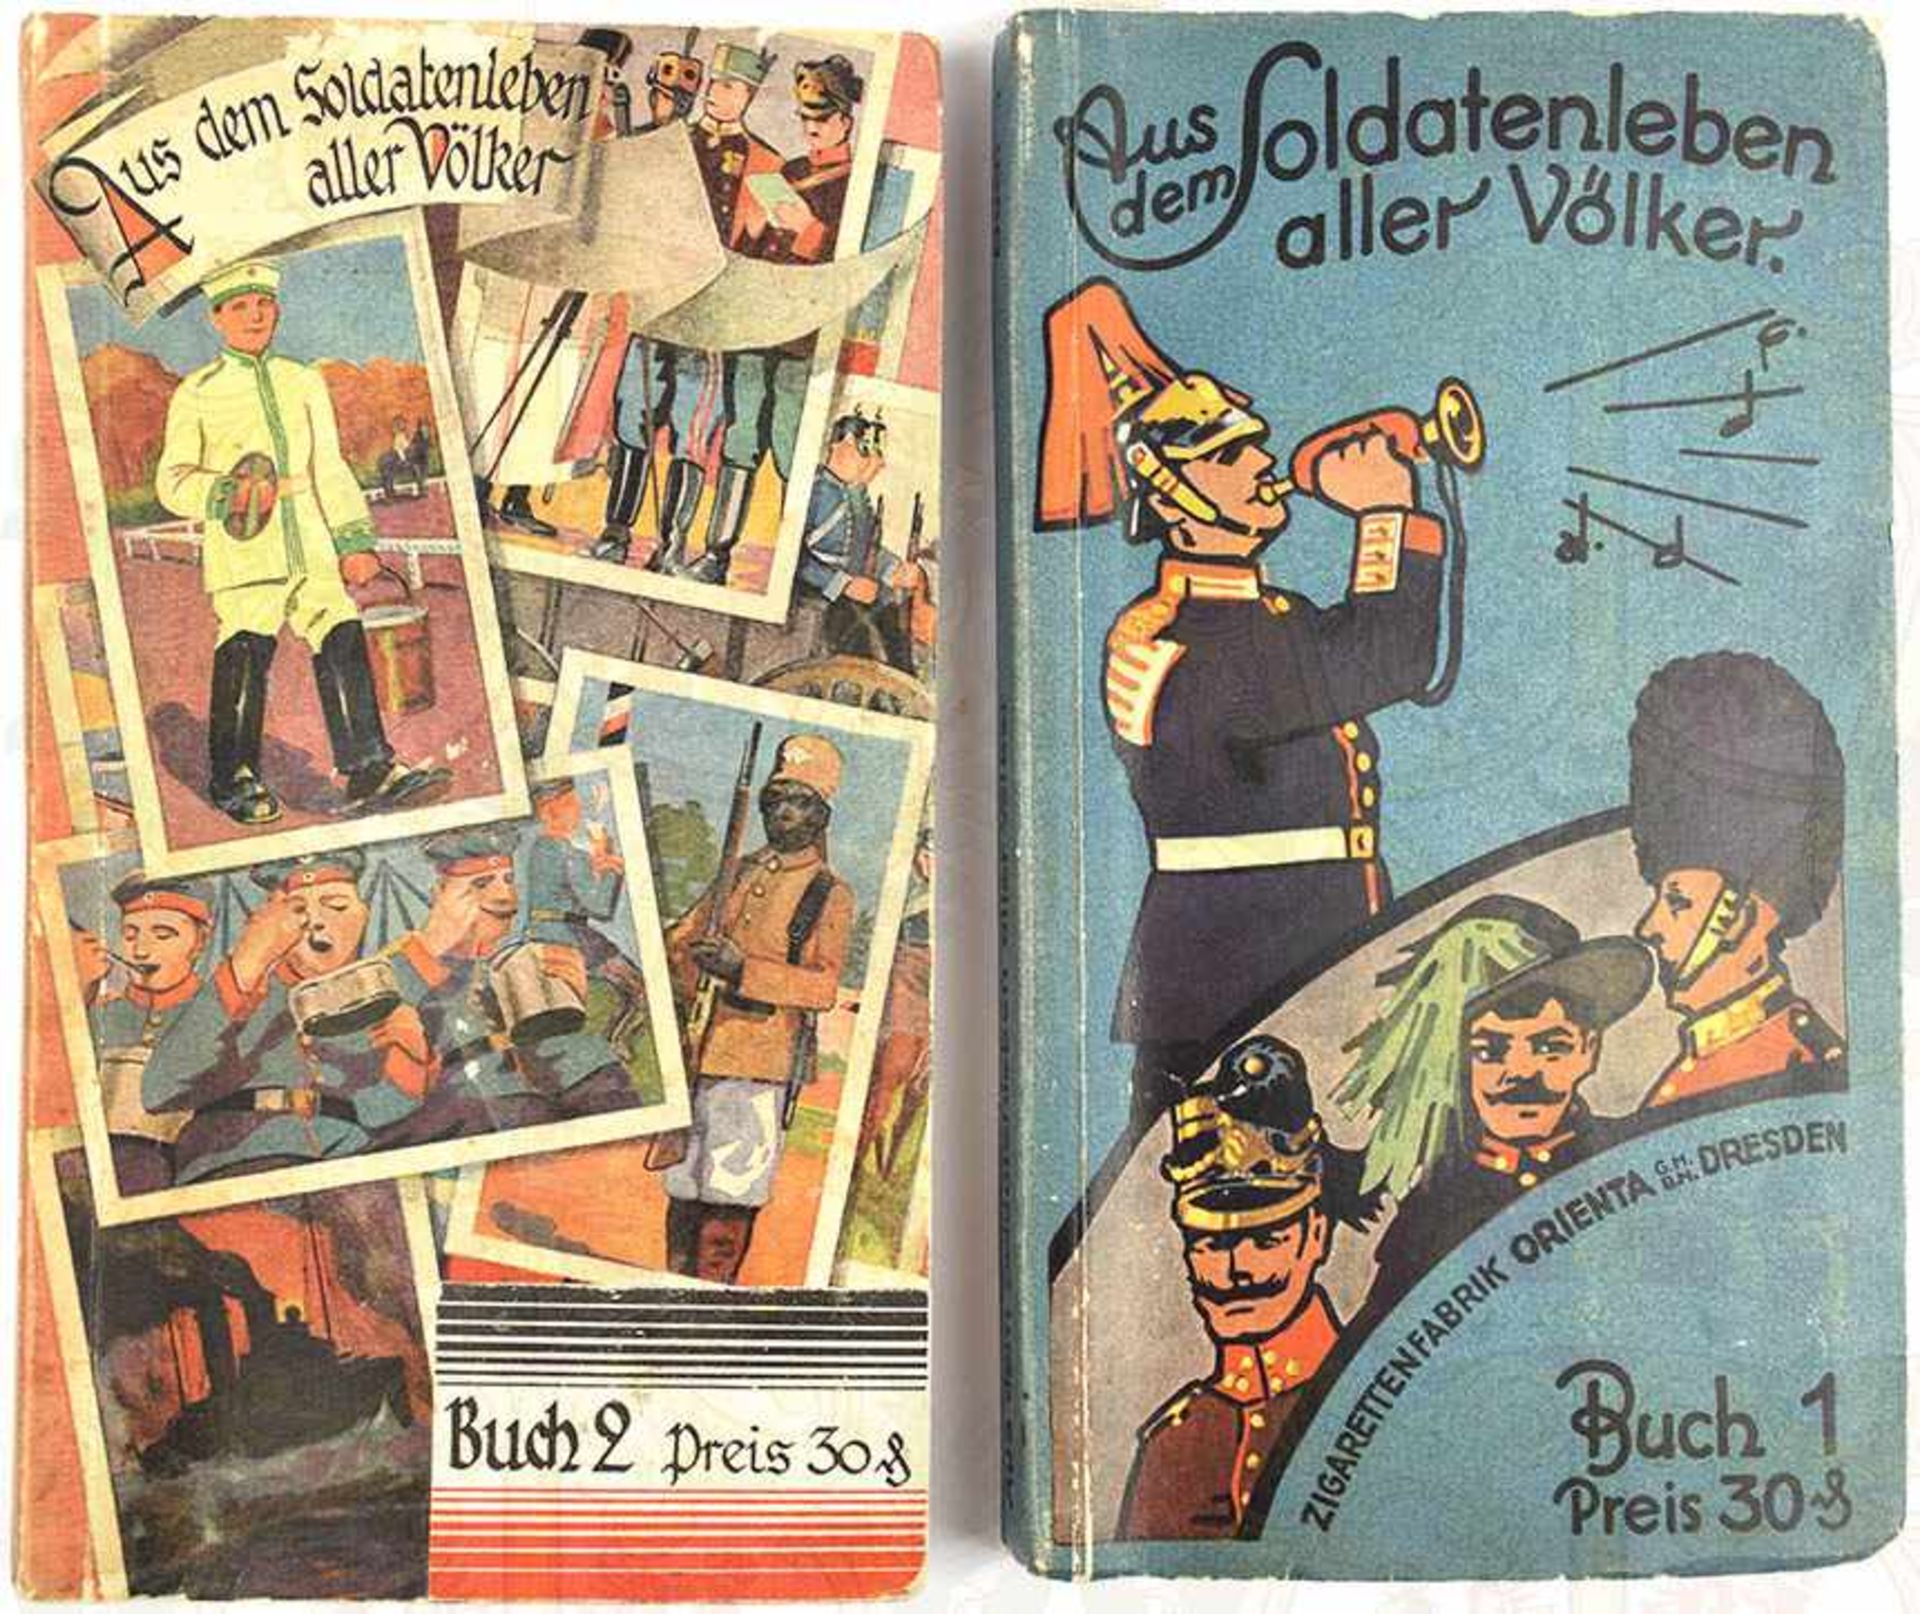 2 ALBEN - AUS DEM SOLDATENLEBEN ALLER VÖLKER, Bücher 1 u. 2, Orienta GmbH, Dresden 1932, ges. 300